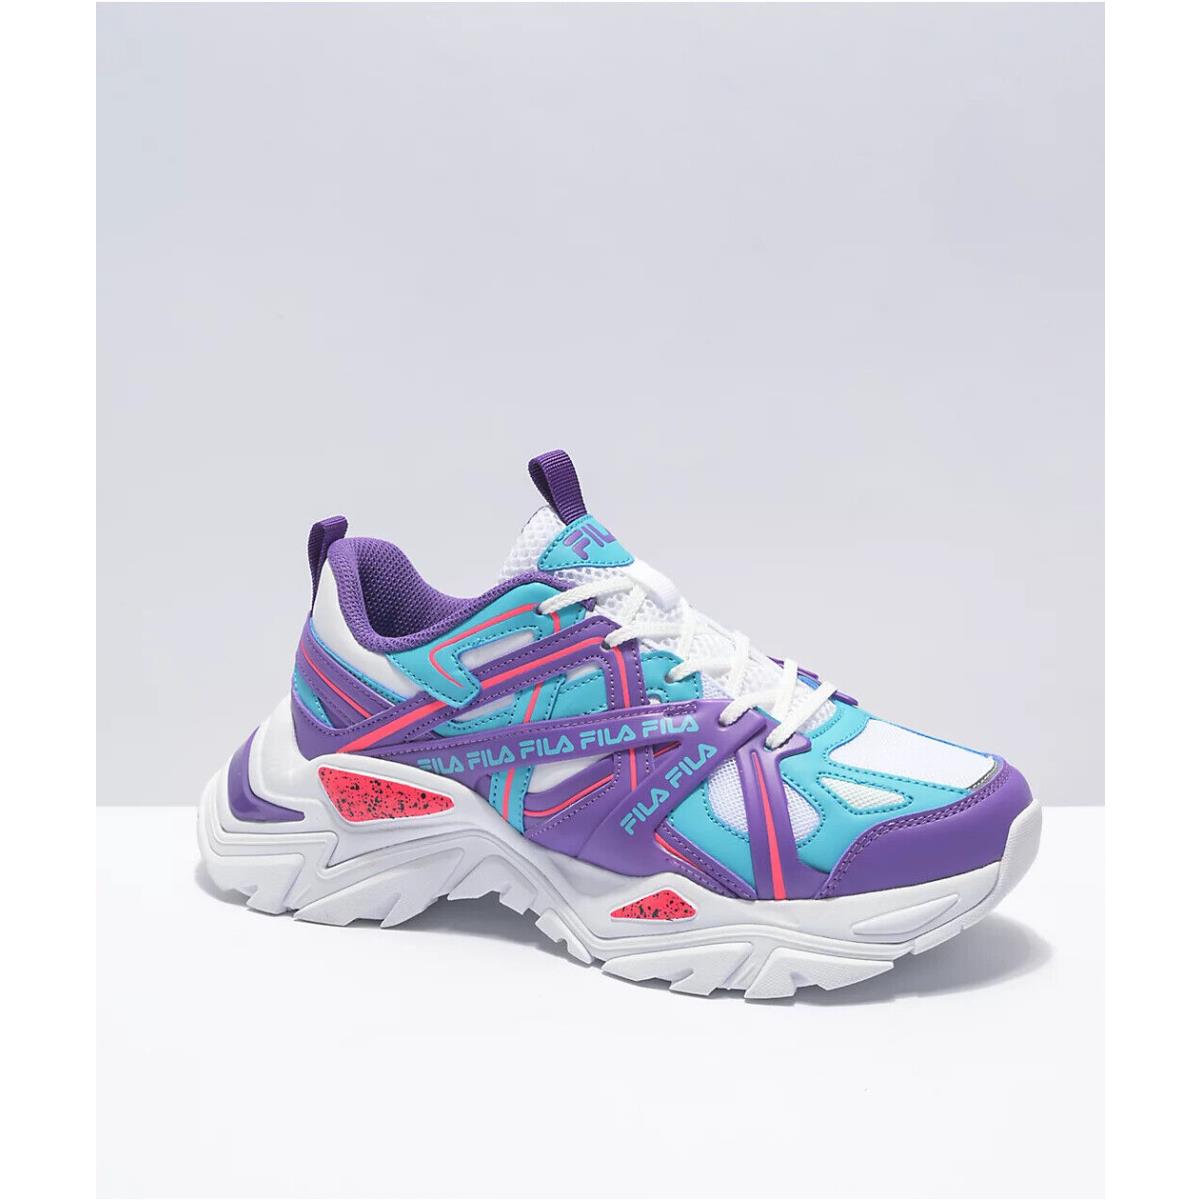 Fila Electrove 2 Youth/kids - White/purple/scuba - Shoe Sneaker - Size 6.5 Y